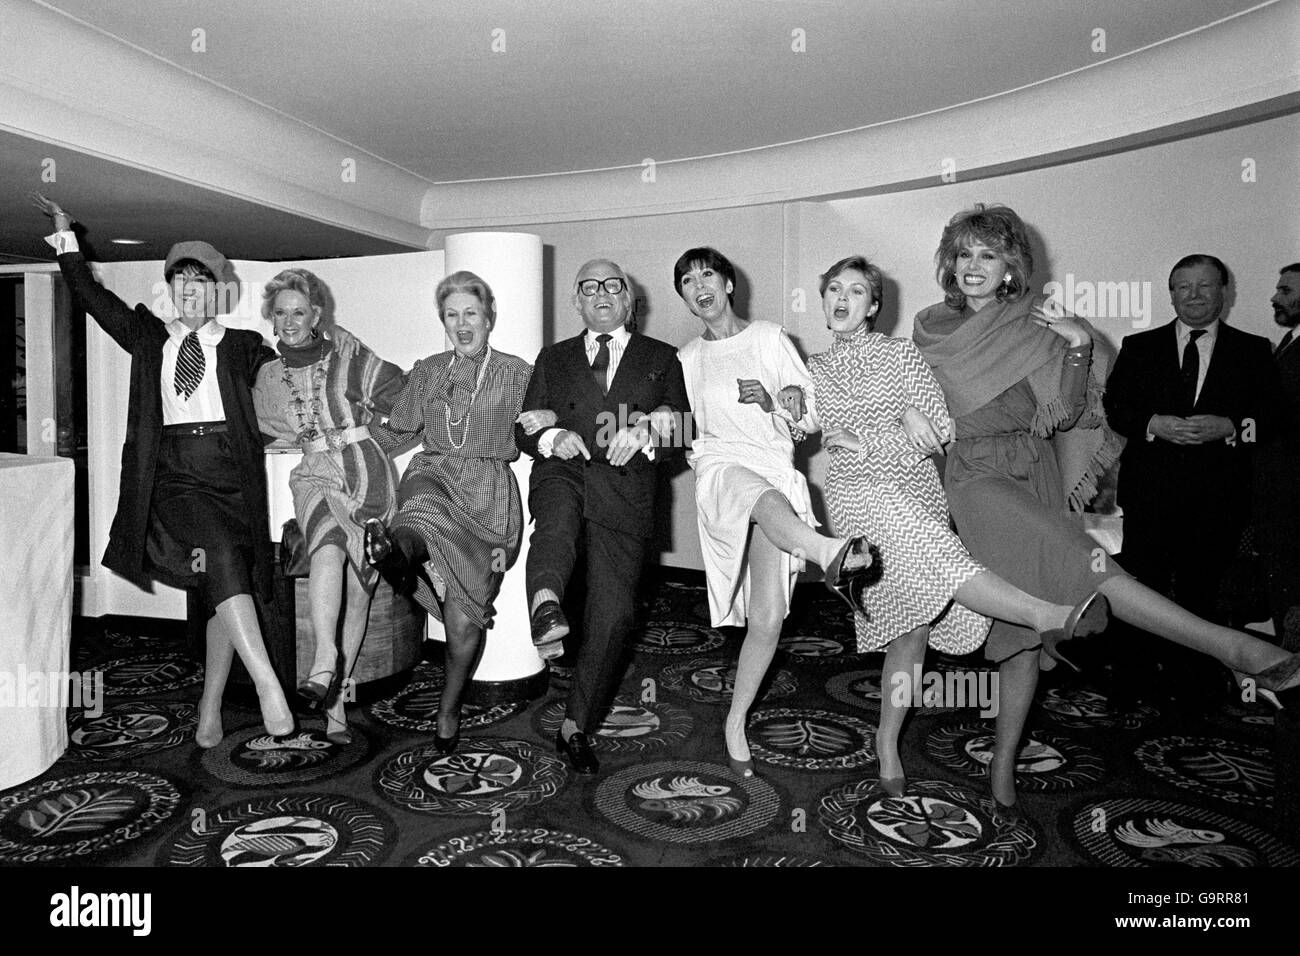 Sir Richard Attenborough, Regisseur von „Gandhi“, flankierte heute im Savoy Hotel in The Strand, London, von einer Choruslinie hochkickender weiblicher Bühnen- und Leinwandstars vor dem Tribute-Lunch des Variety Clubs an den Schauspieler/Regisseur. VON LINKS: NANETTE NEWMAN, TIPPI HEDREN, LADY ATTENBOROUGH (SHEILA SIM) ANITA HARRIS, FIONA FULLERTON UND JOANNA LUMLEY Stockfoto